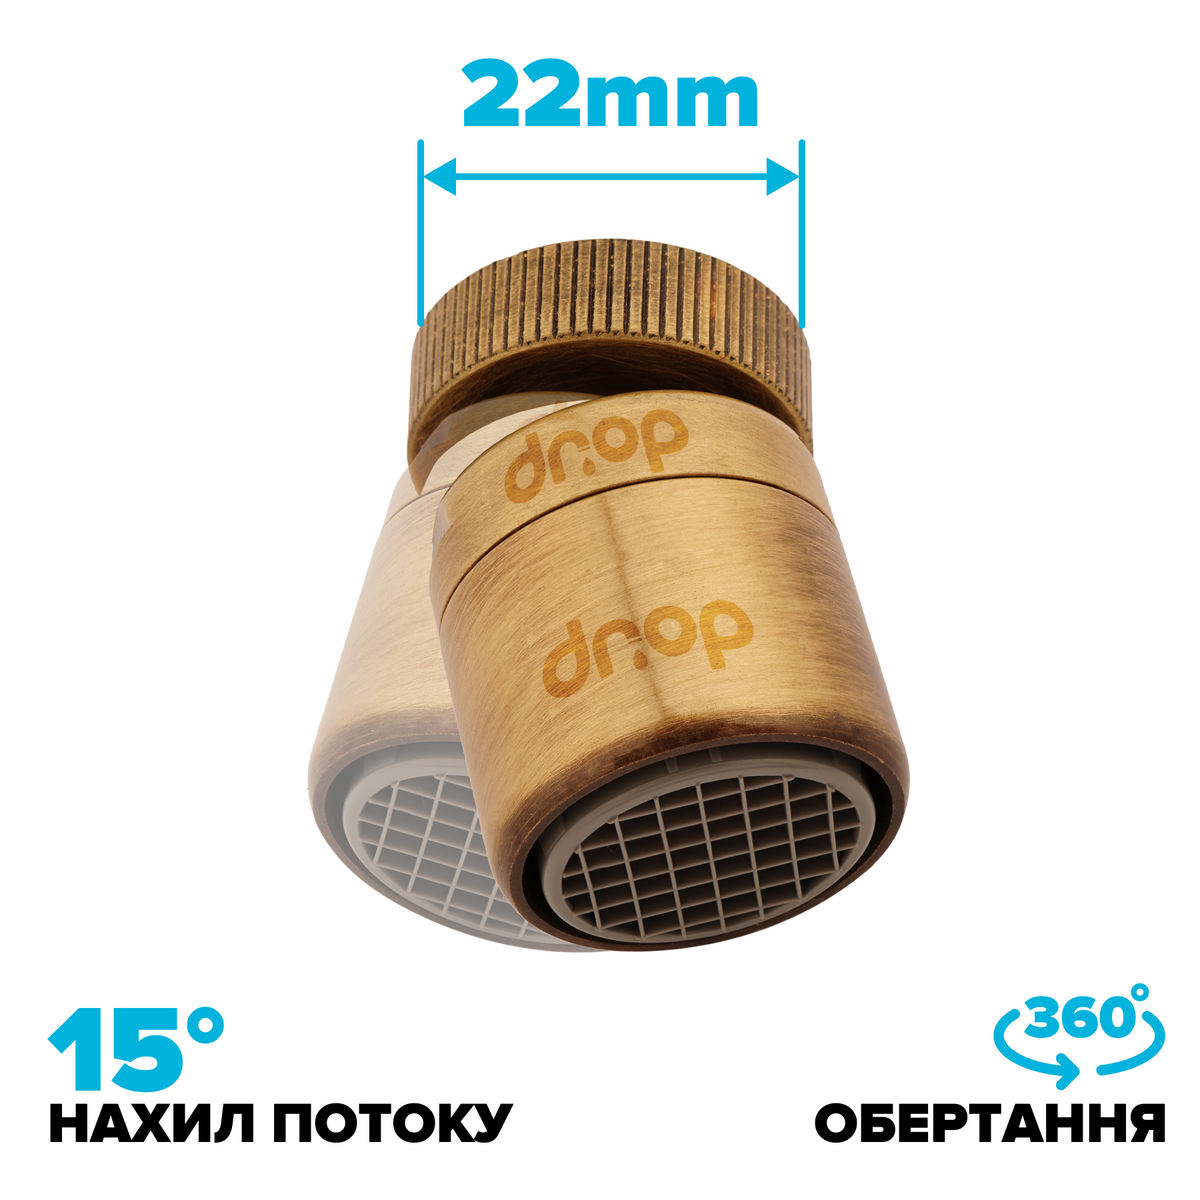 Поворотный 360° адаптер DROP СOLOR CL360F-BRN внутренняя резьба 22 мм угол 15° латунь цвет бронзовый